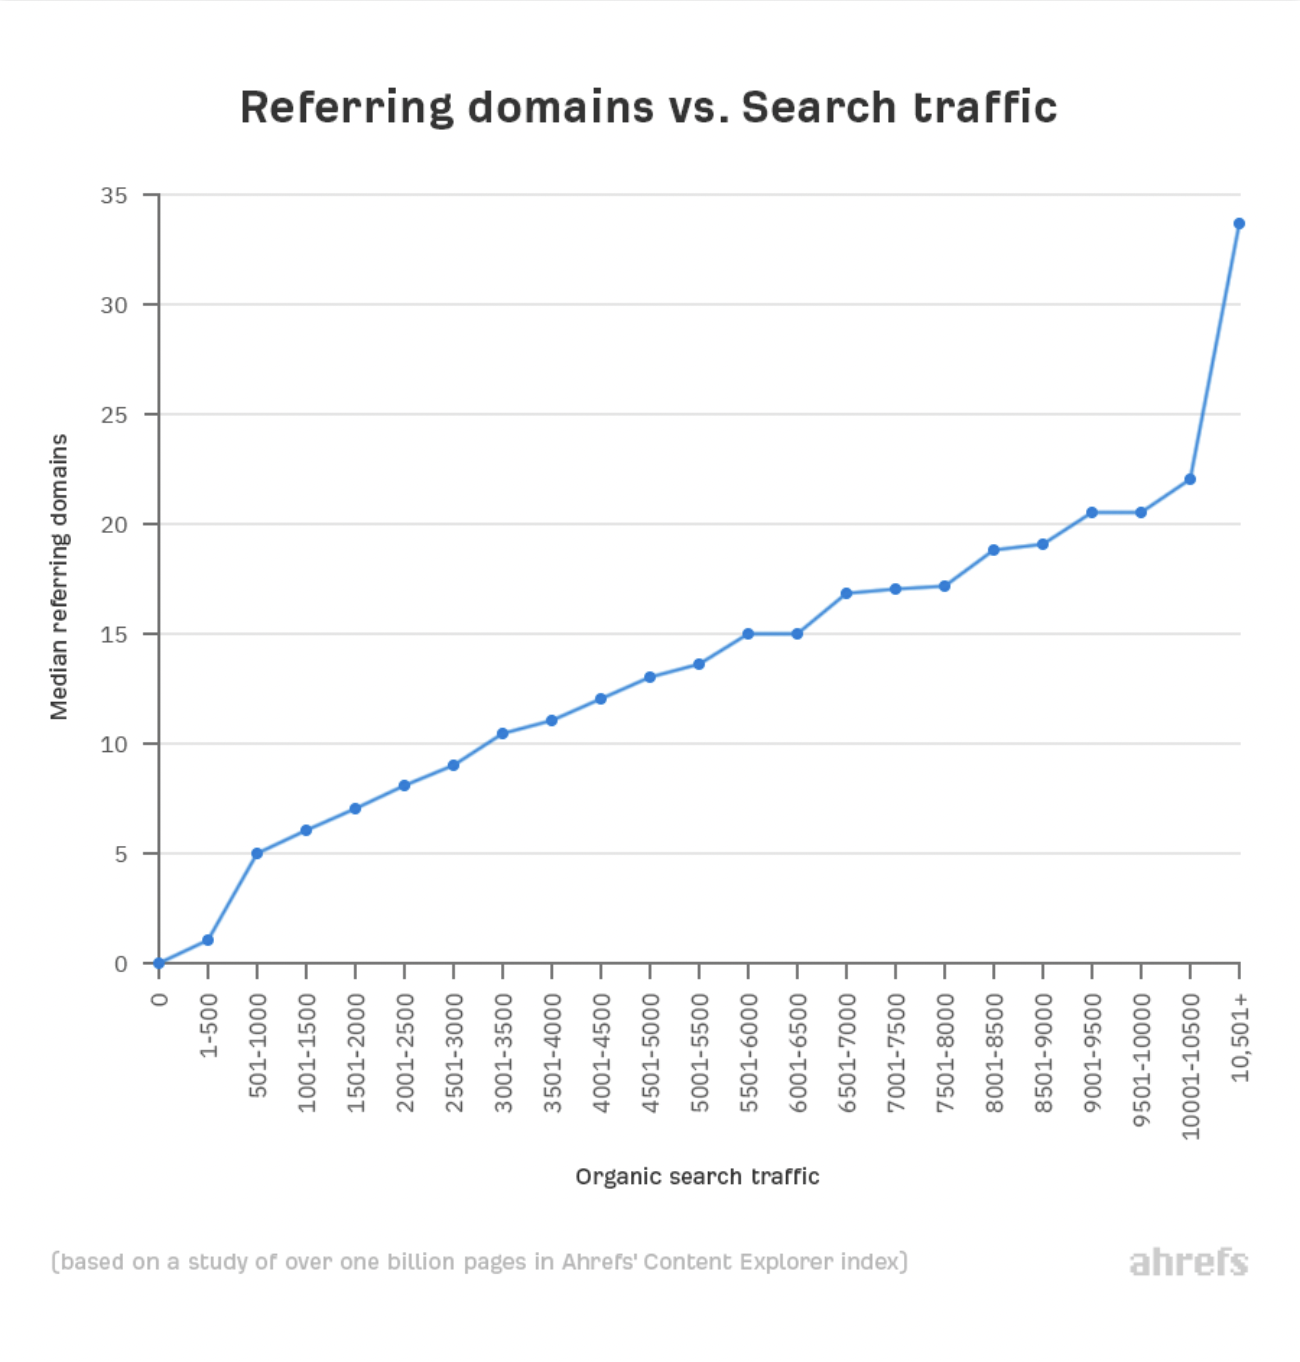 cuantos más backlinks tenga una página, más tráfico orgánico obtendrá de Google. (Ahrefs, 2020) 